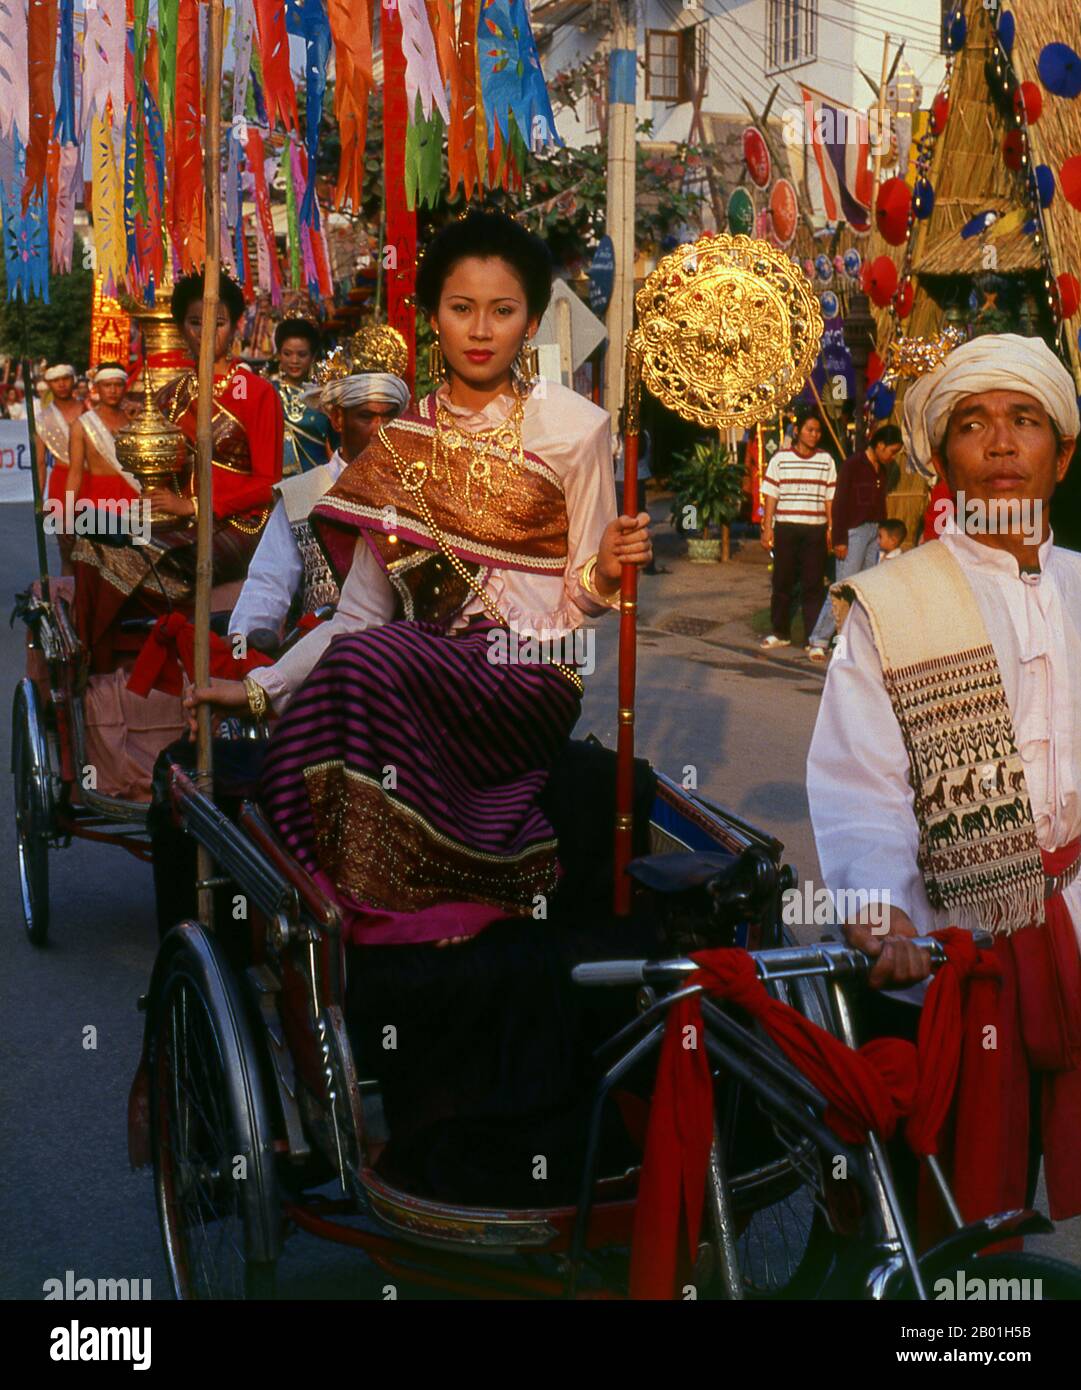 Thaïlande : Femme thaïlandaise du Nord dans le défilé du Festival des parapluies de Bo sang, Bo sang, Chiang Mai. Bo sang, près de la ville de Chiang Mai, au nord de la Thaïlande, est célèbre pour ses parapluies et parasols aux couleurs vives faits à la main. Une fois par an, fin janvier, le Bo sang Umbrella and San Kamphaeng Handicrafts Festival se tient dans la ville. Chiang Mai (qui signifie « nouvelle ville »), parfois écrit « Chiengmai » ou « Chiangmai », est la ville la plus grande et la plus importante culturellement dans le nord de la Thaïlande. Le roi Mengrai a fondé la ville de Chiang Mai en 1296, qui a succédé à Chiang Rai comme capitale du royaume de Lanna. Banque D'Images